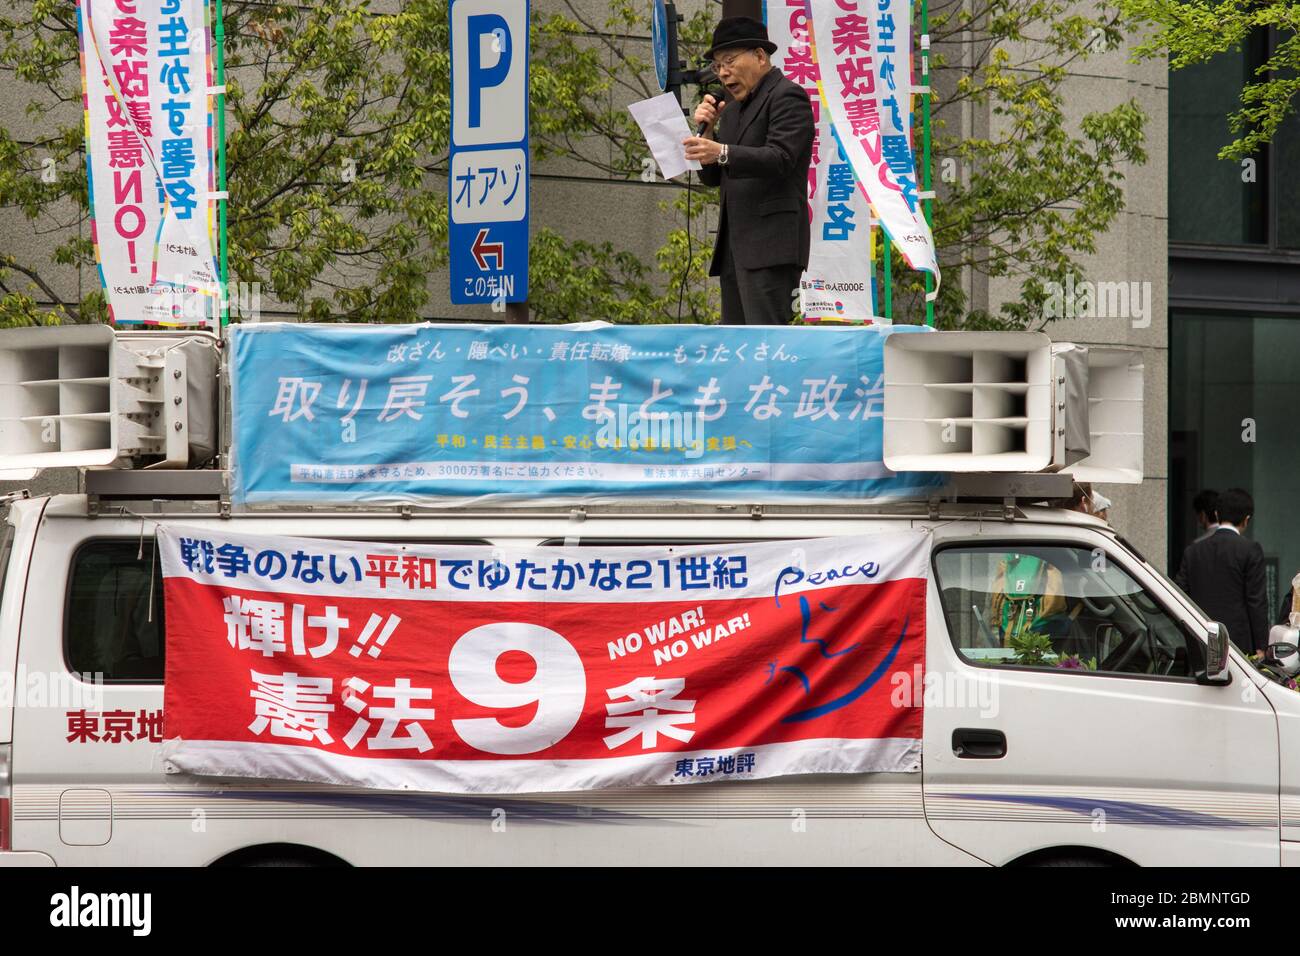 Tokio / Japan - 18. April 2018: Älterer Mann steht auf einem Lieferwagen und schreit in der Innenstadt von Tokio, Japan, Anti-Kriegslosungen Stockfoto